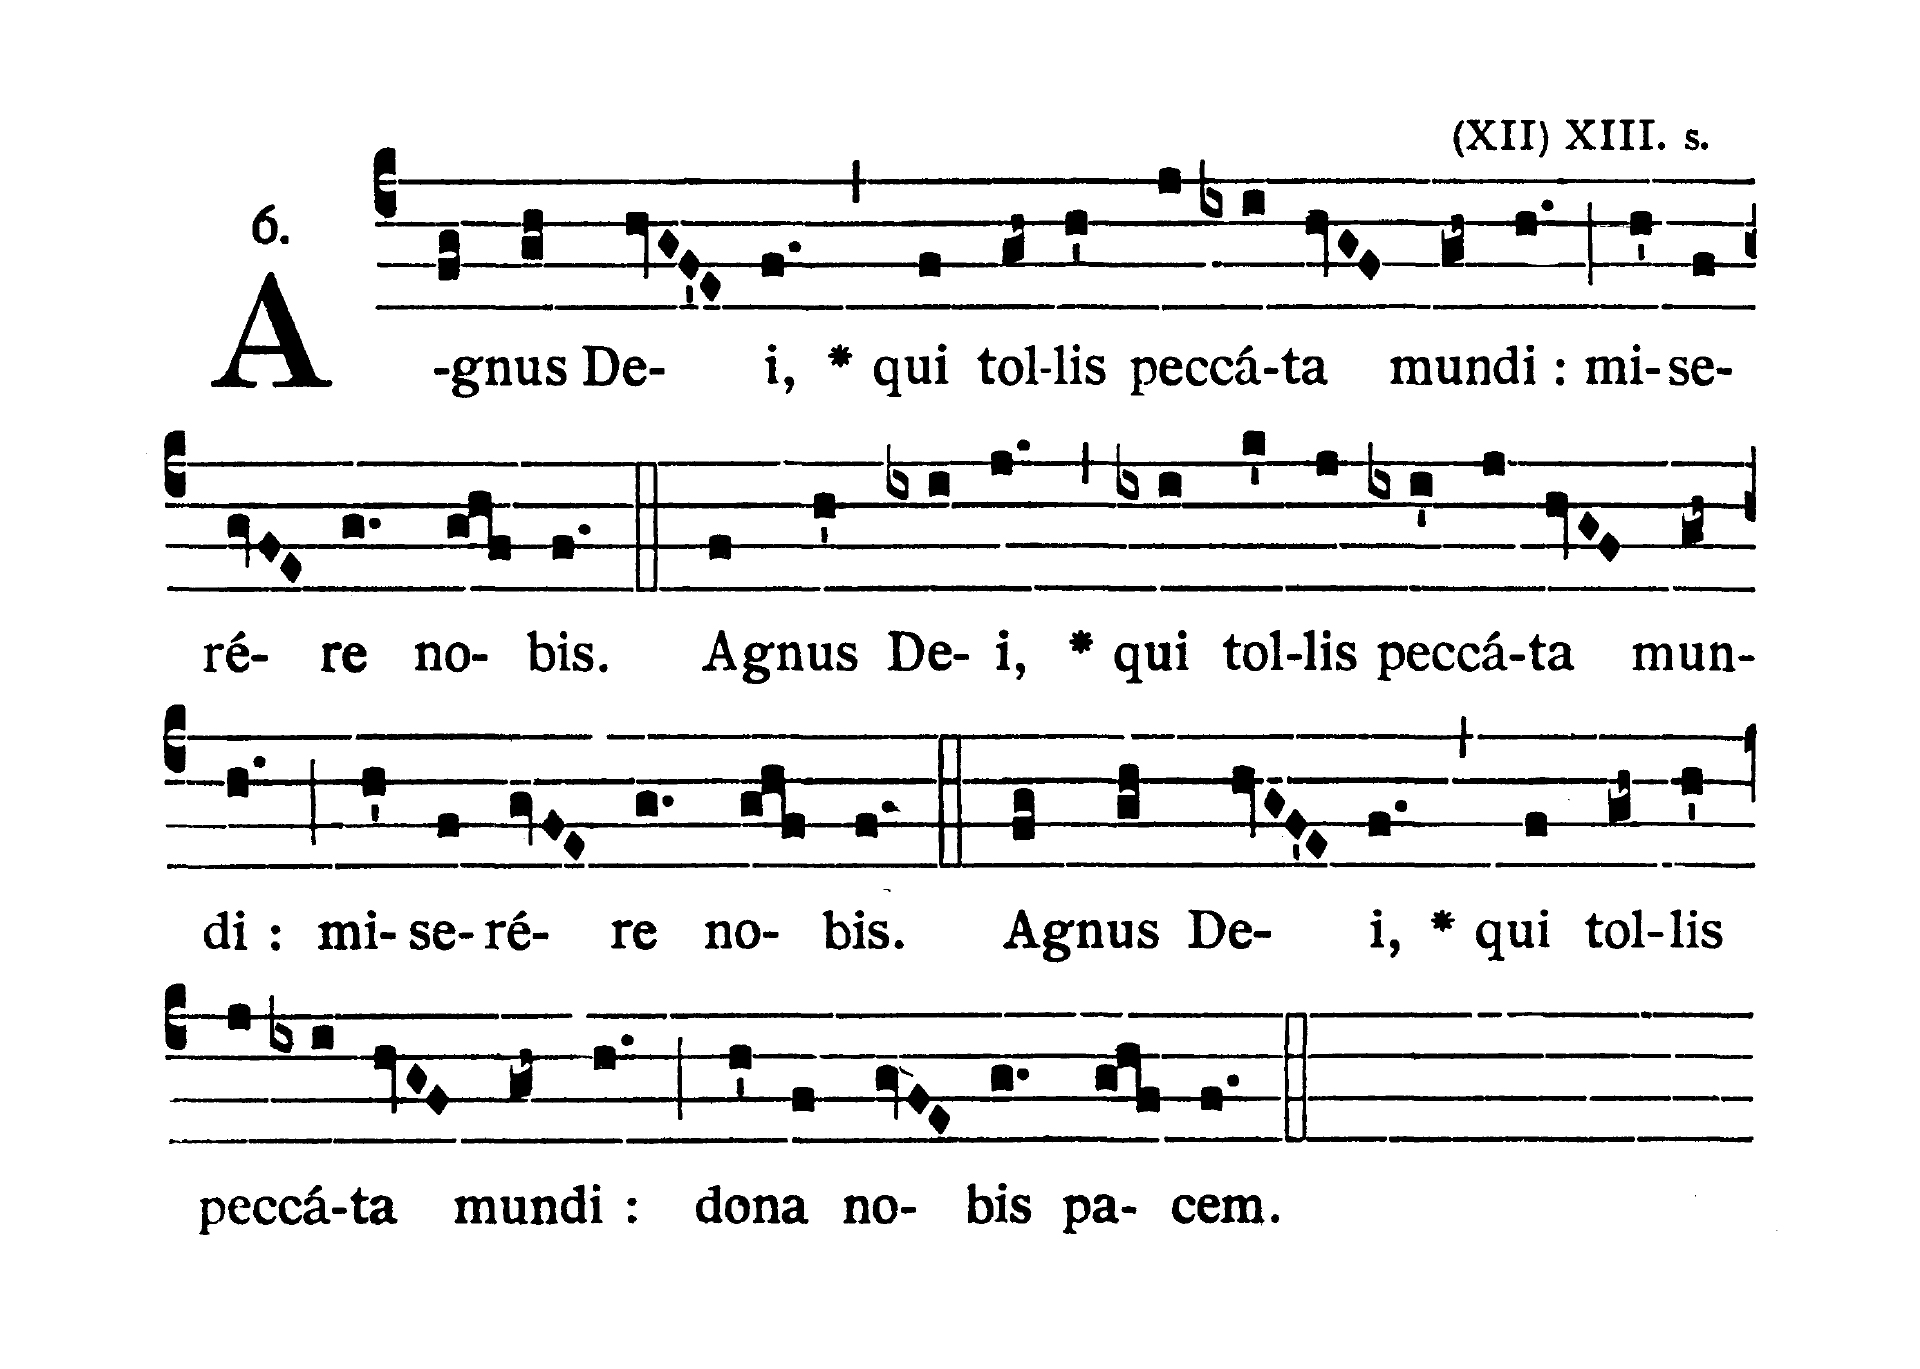 Missa IV (Cunctipotens Genitor Deus) - Agnus Dei